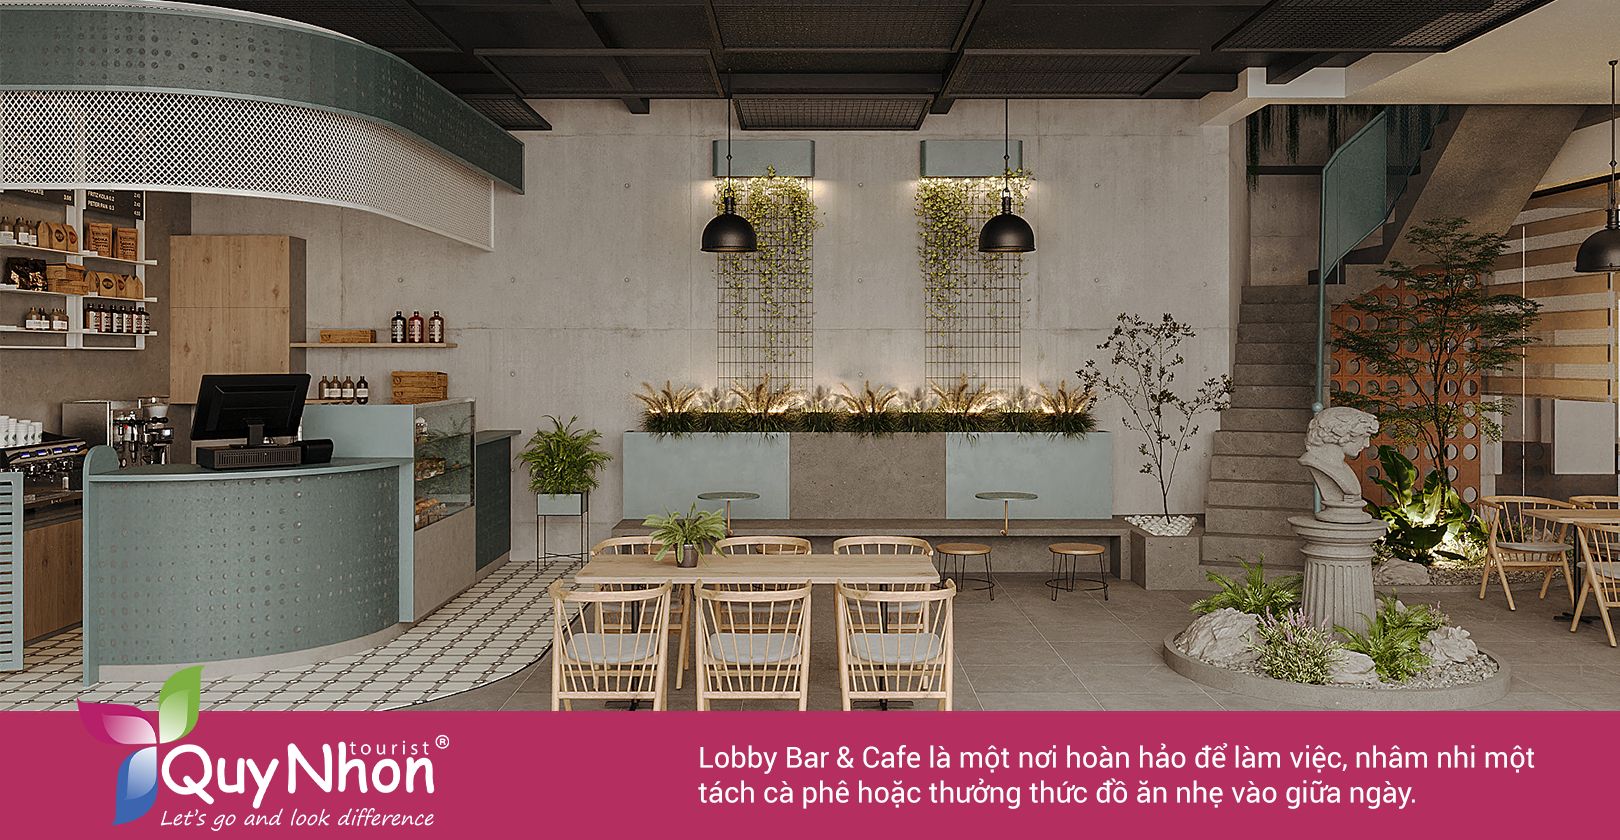 Lobby Bar & Cafe là địa điểm hoàn hảo để thư giãn.